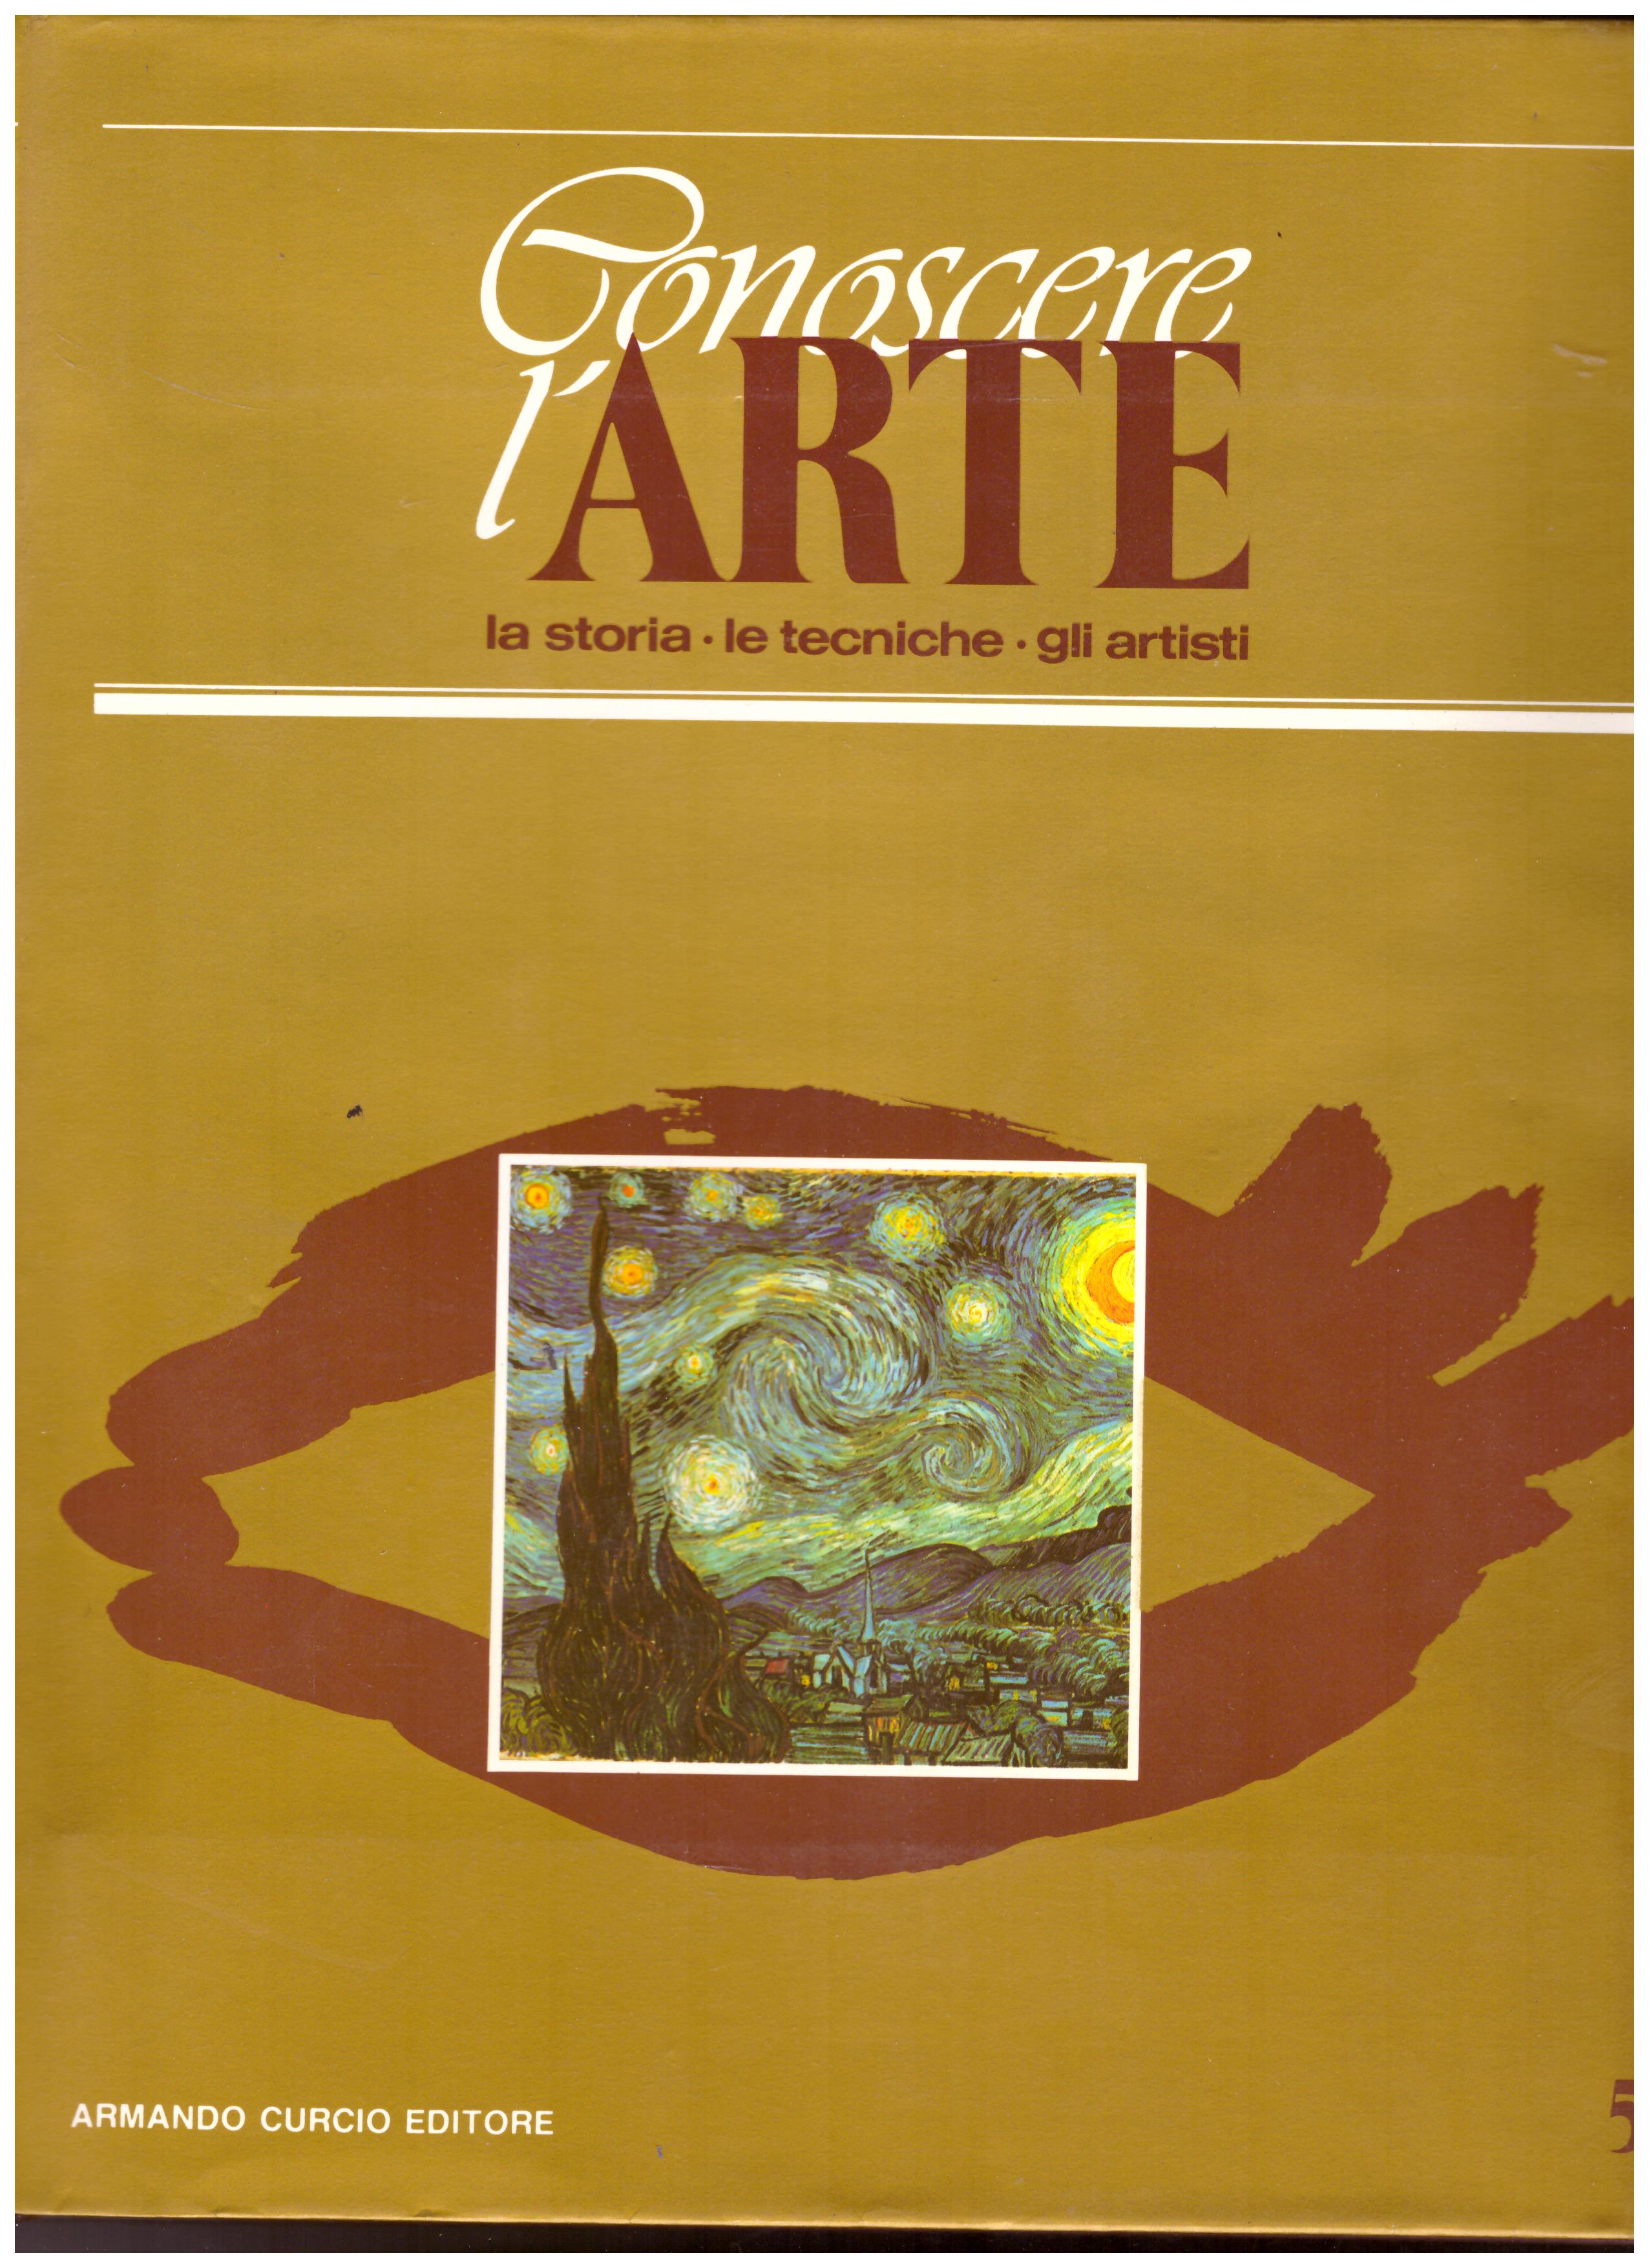 Titolo: Conoscere l'arte n.5  Autore: AA.VV.  Editore: Armando Curcio editore 1986